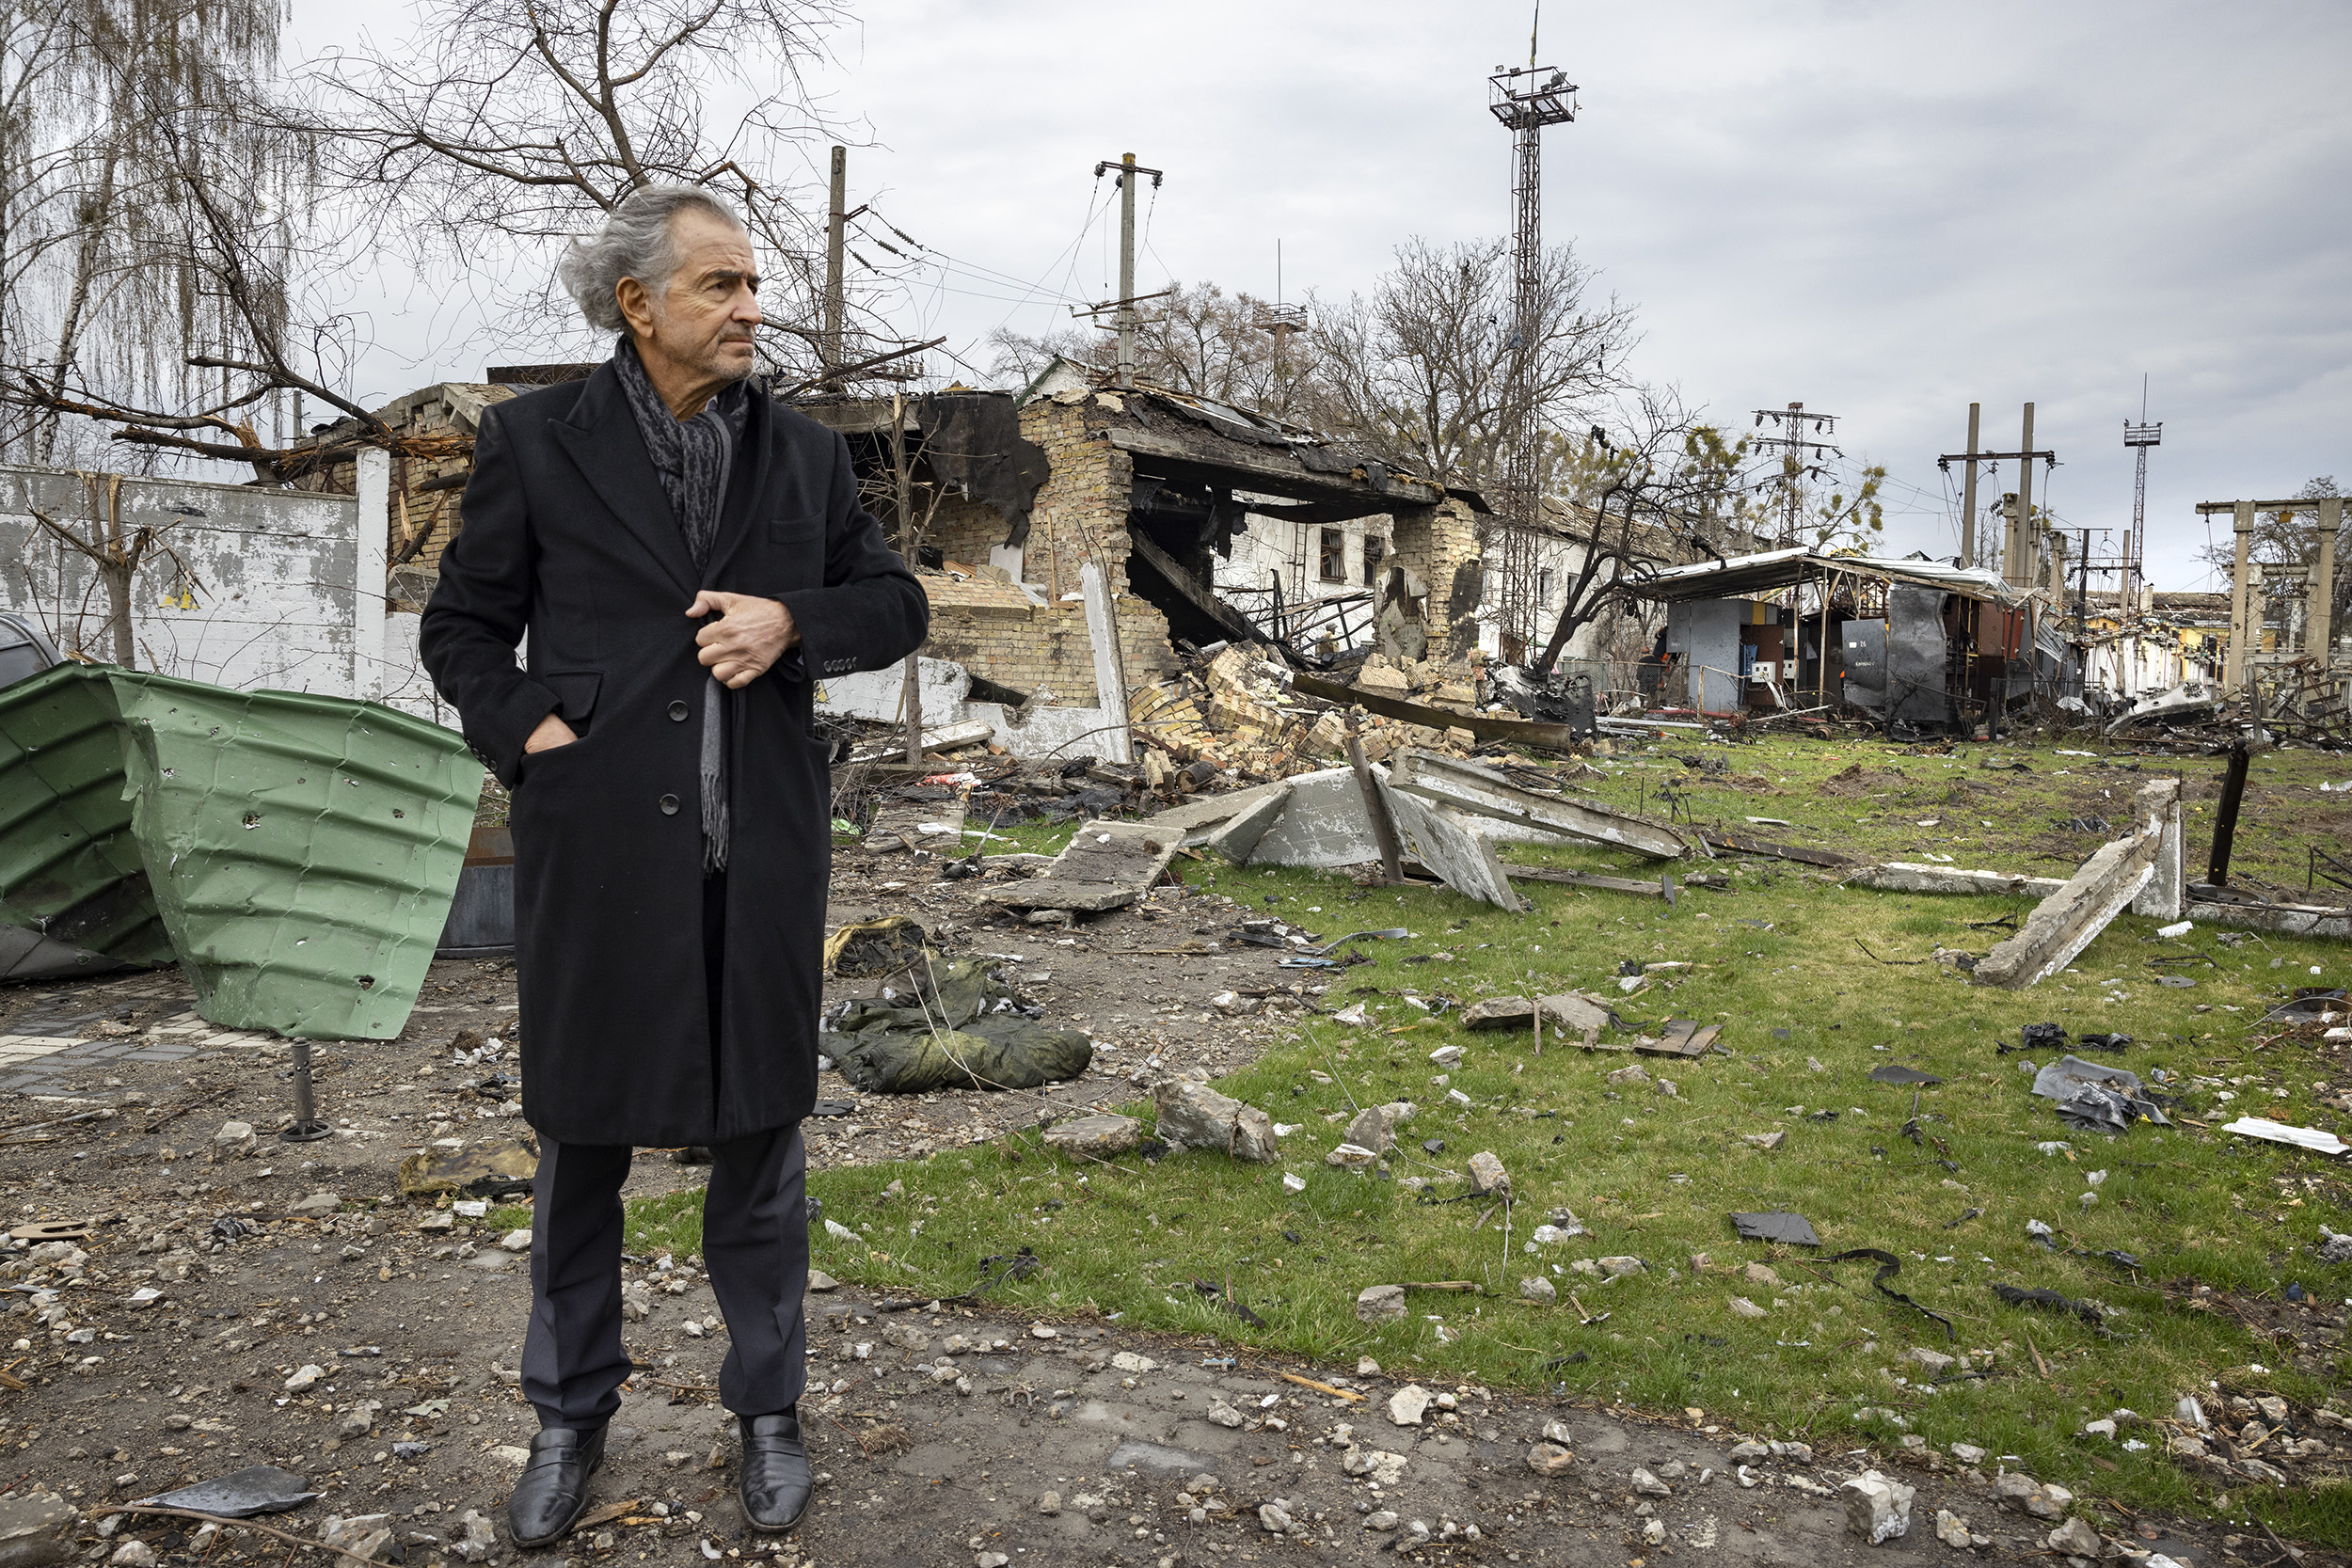 Bernard-Henri Lévy dans les ruines de la ville d'Andreevka. Une maison a brûlée, explosée. Il y a des débris au sol.